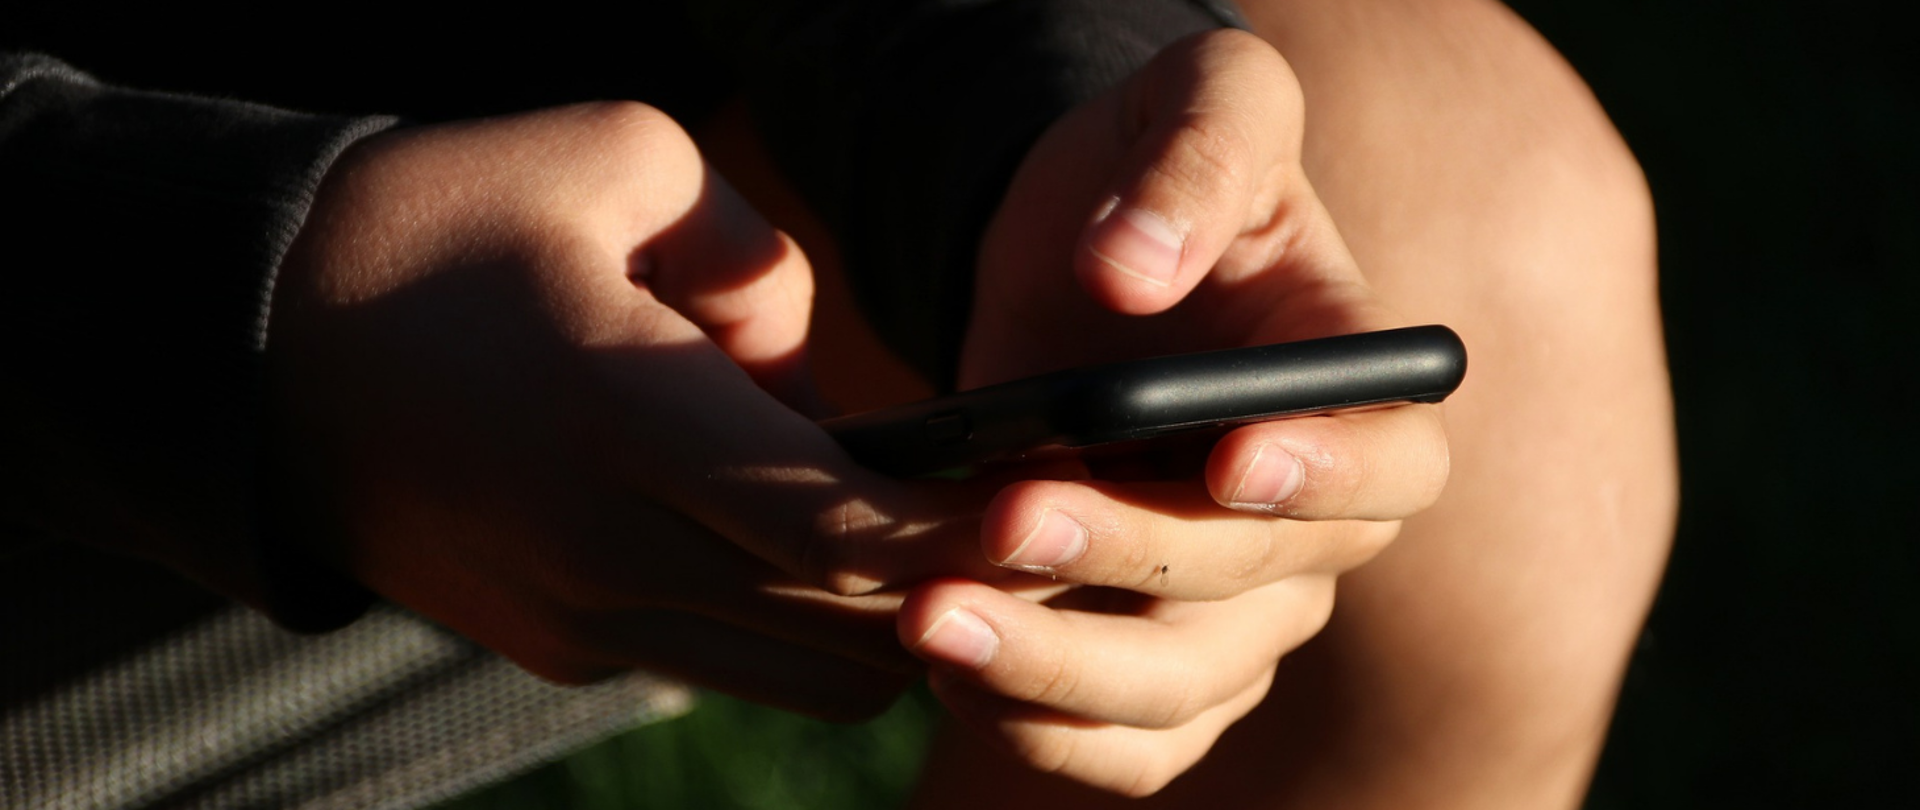 Grafika przedstawia urządzenie mobilne (smartfon) trzymane w dłoniach młodej osoby